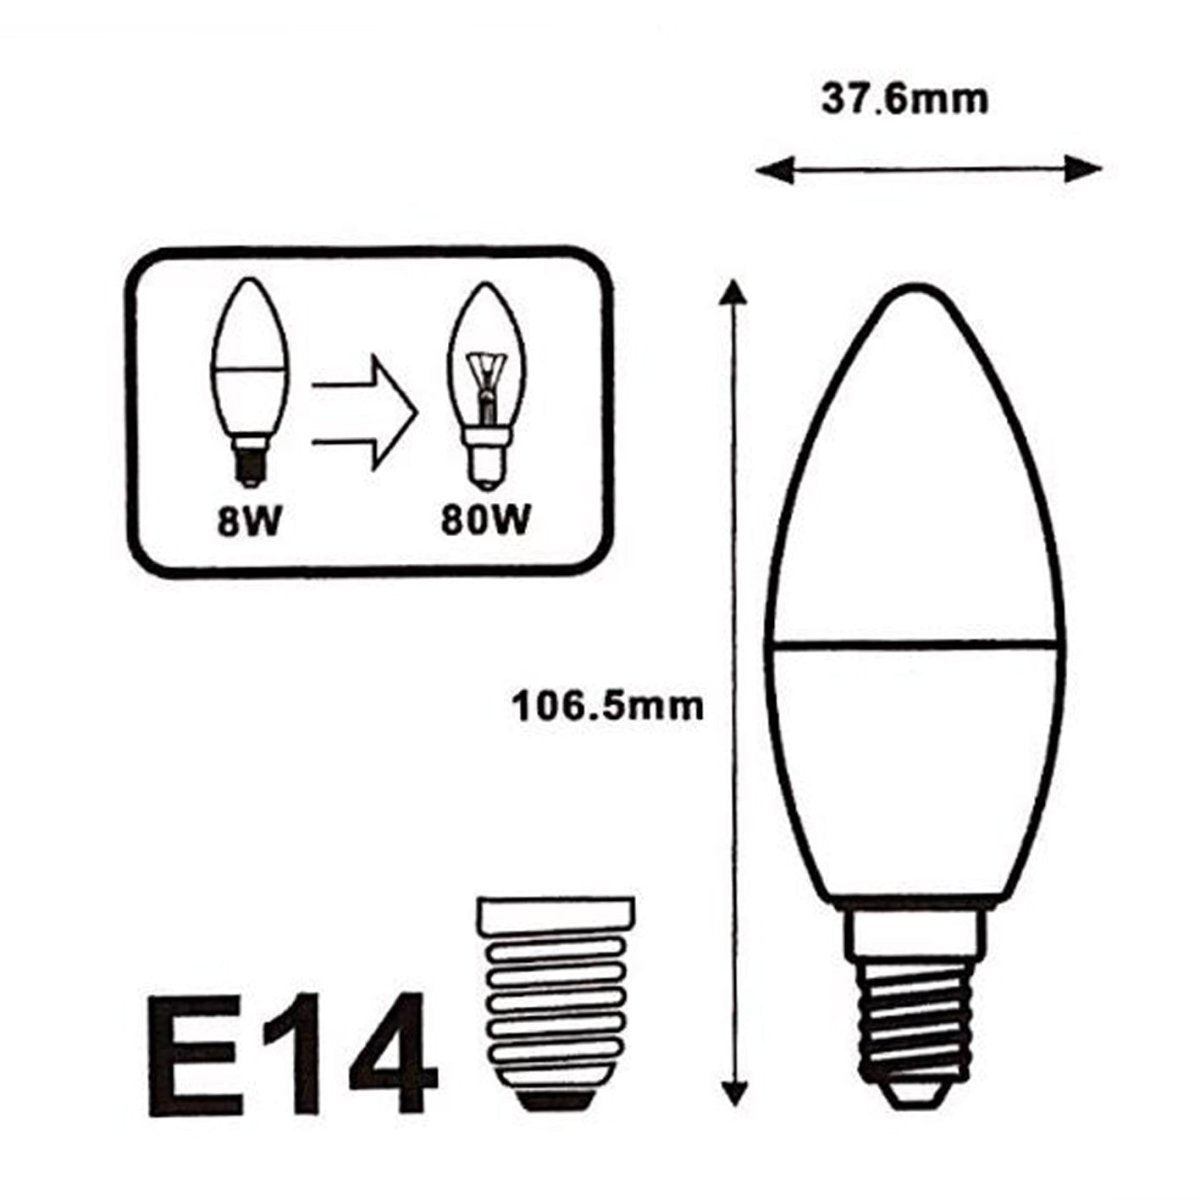 Ampoule LED E14 8W 220V C37 180° (Pack de 100) - Silamp France